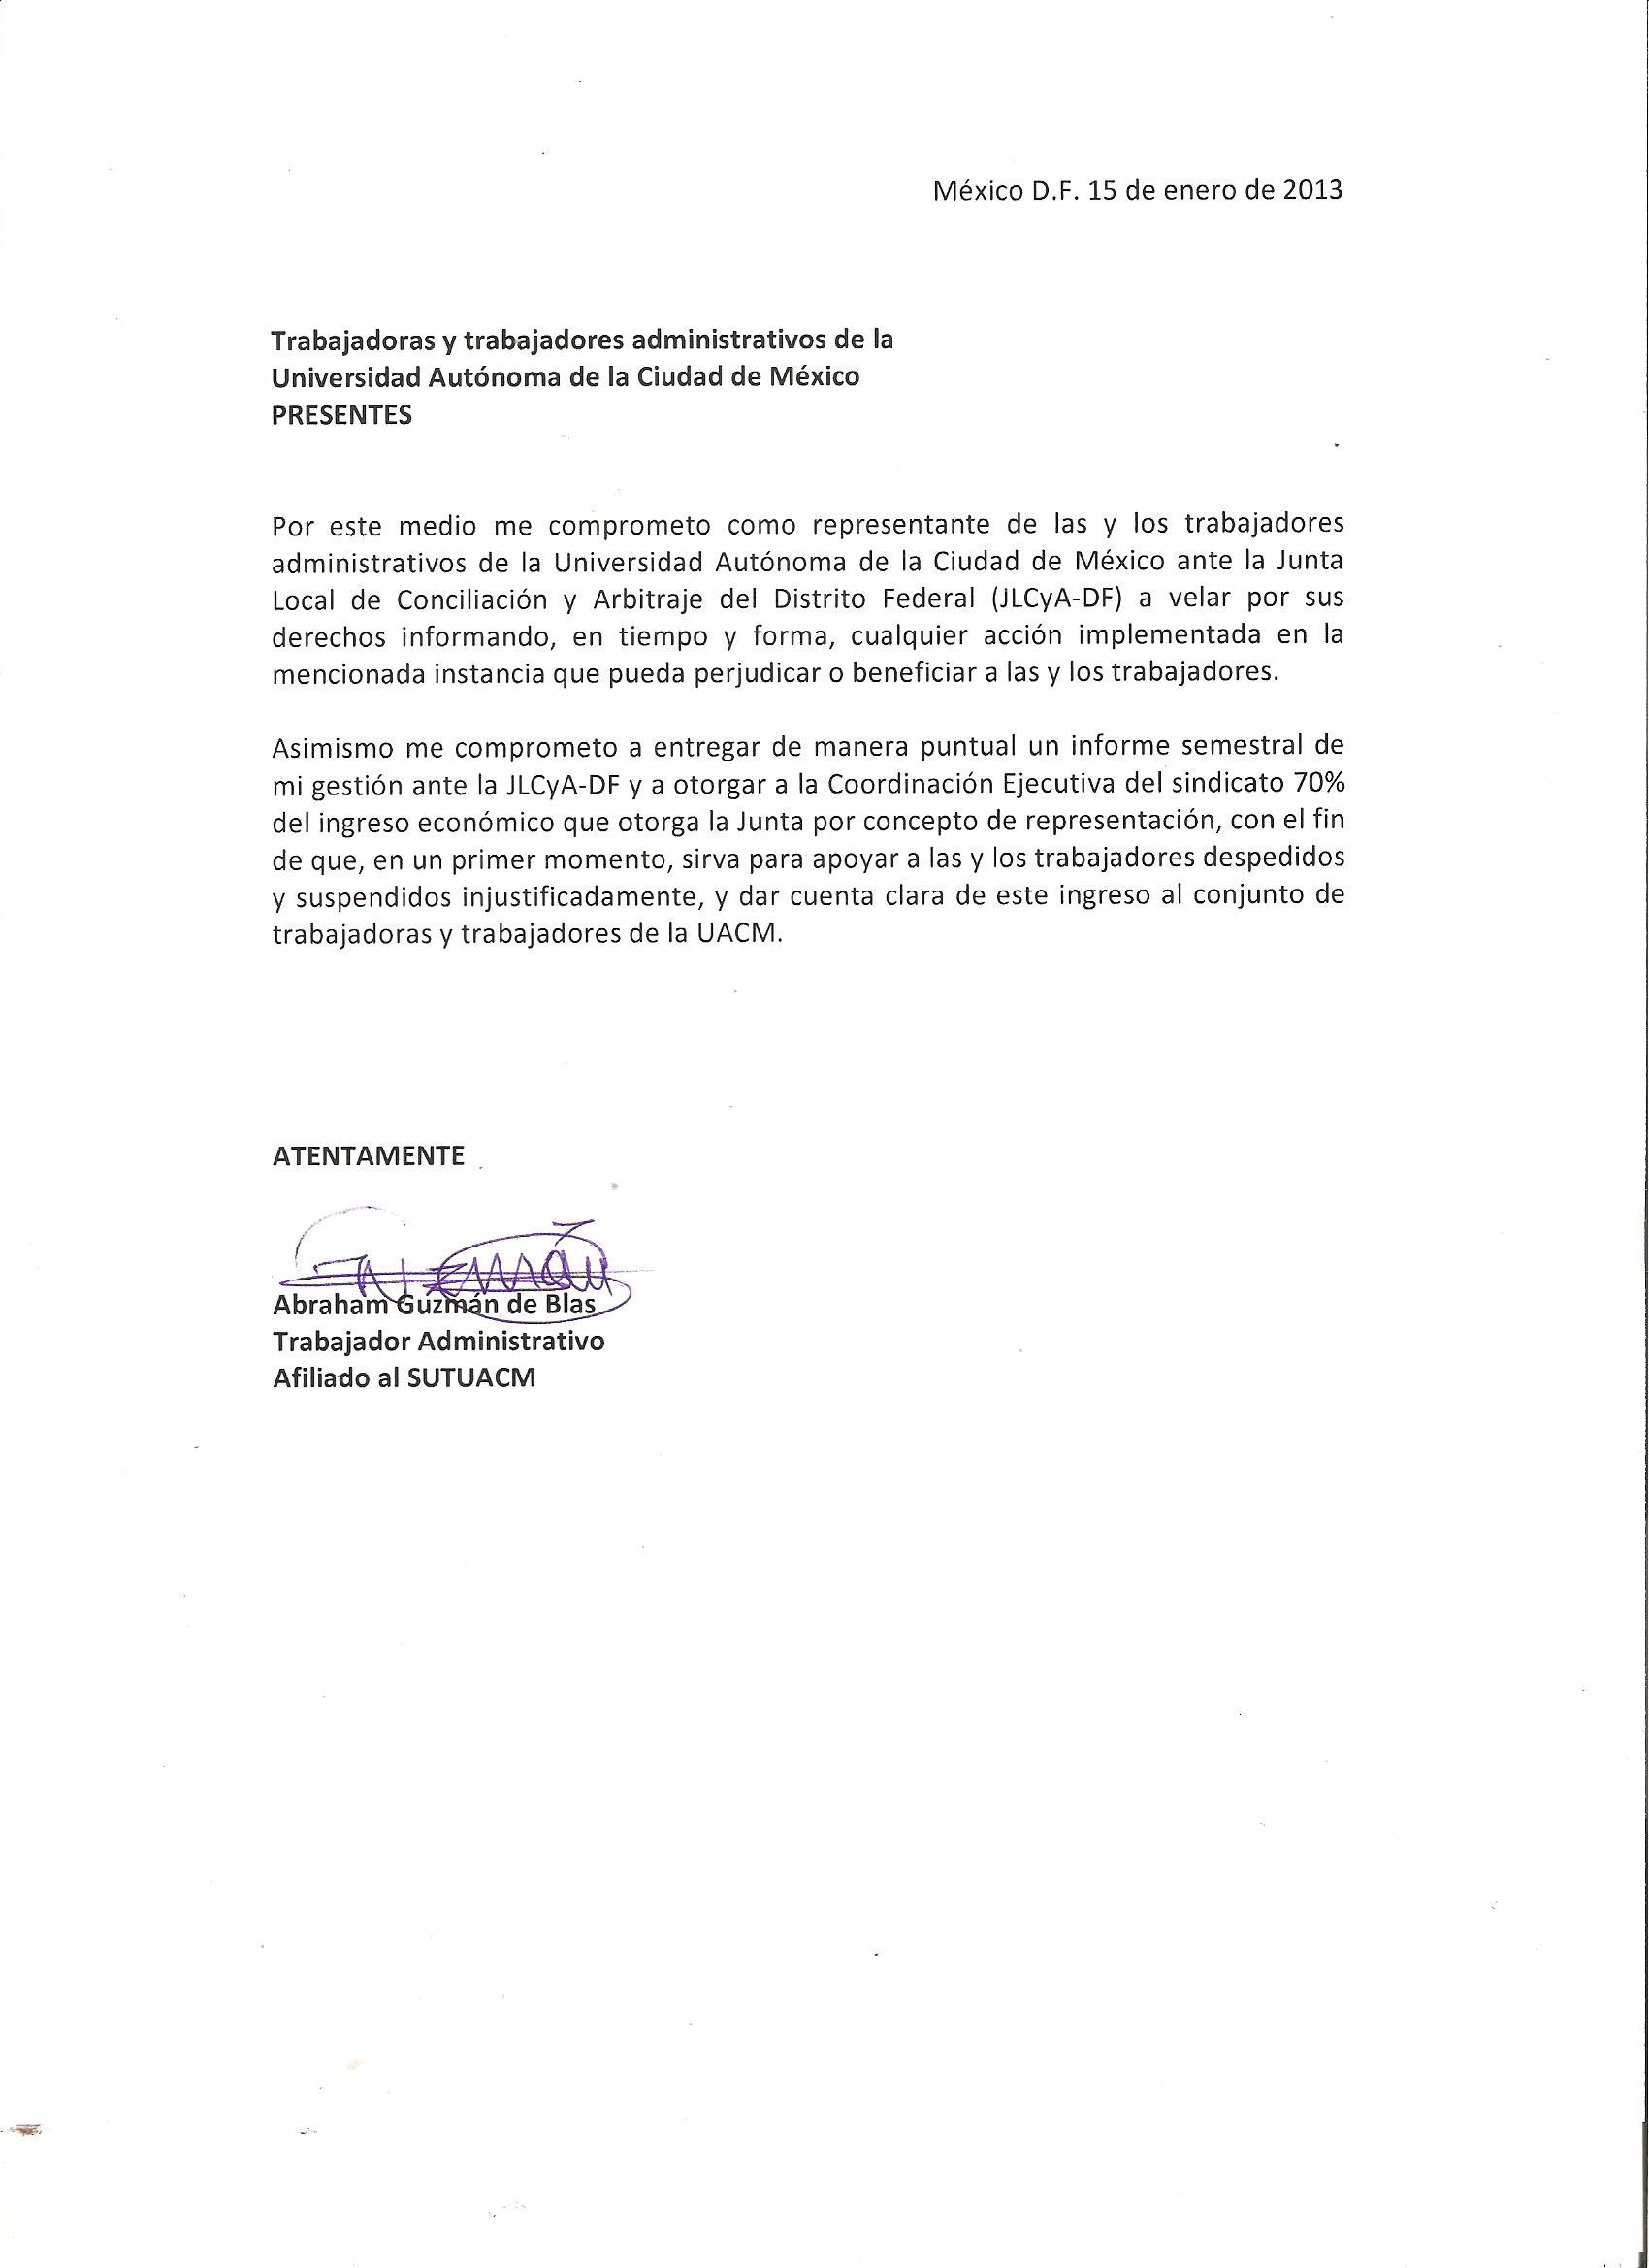 Carta compromiso de los nuevos representantes del SUTUACM 